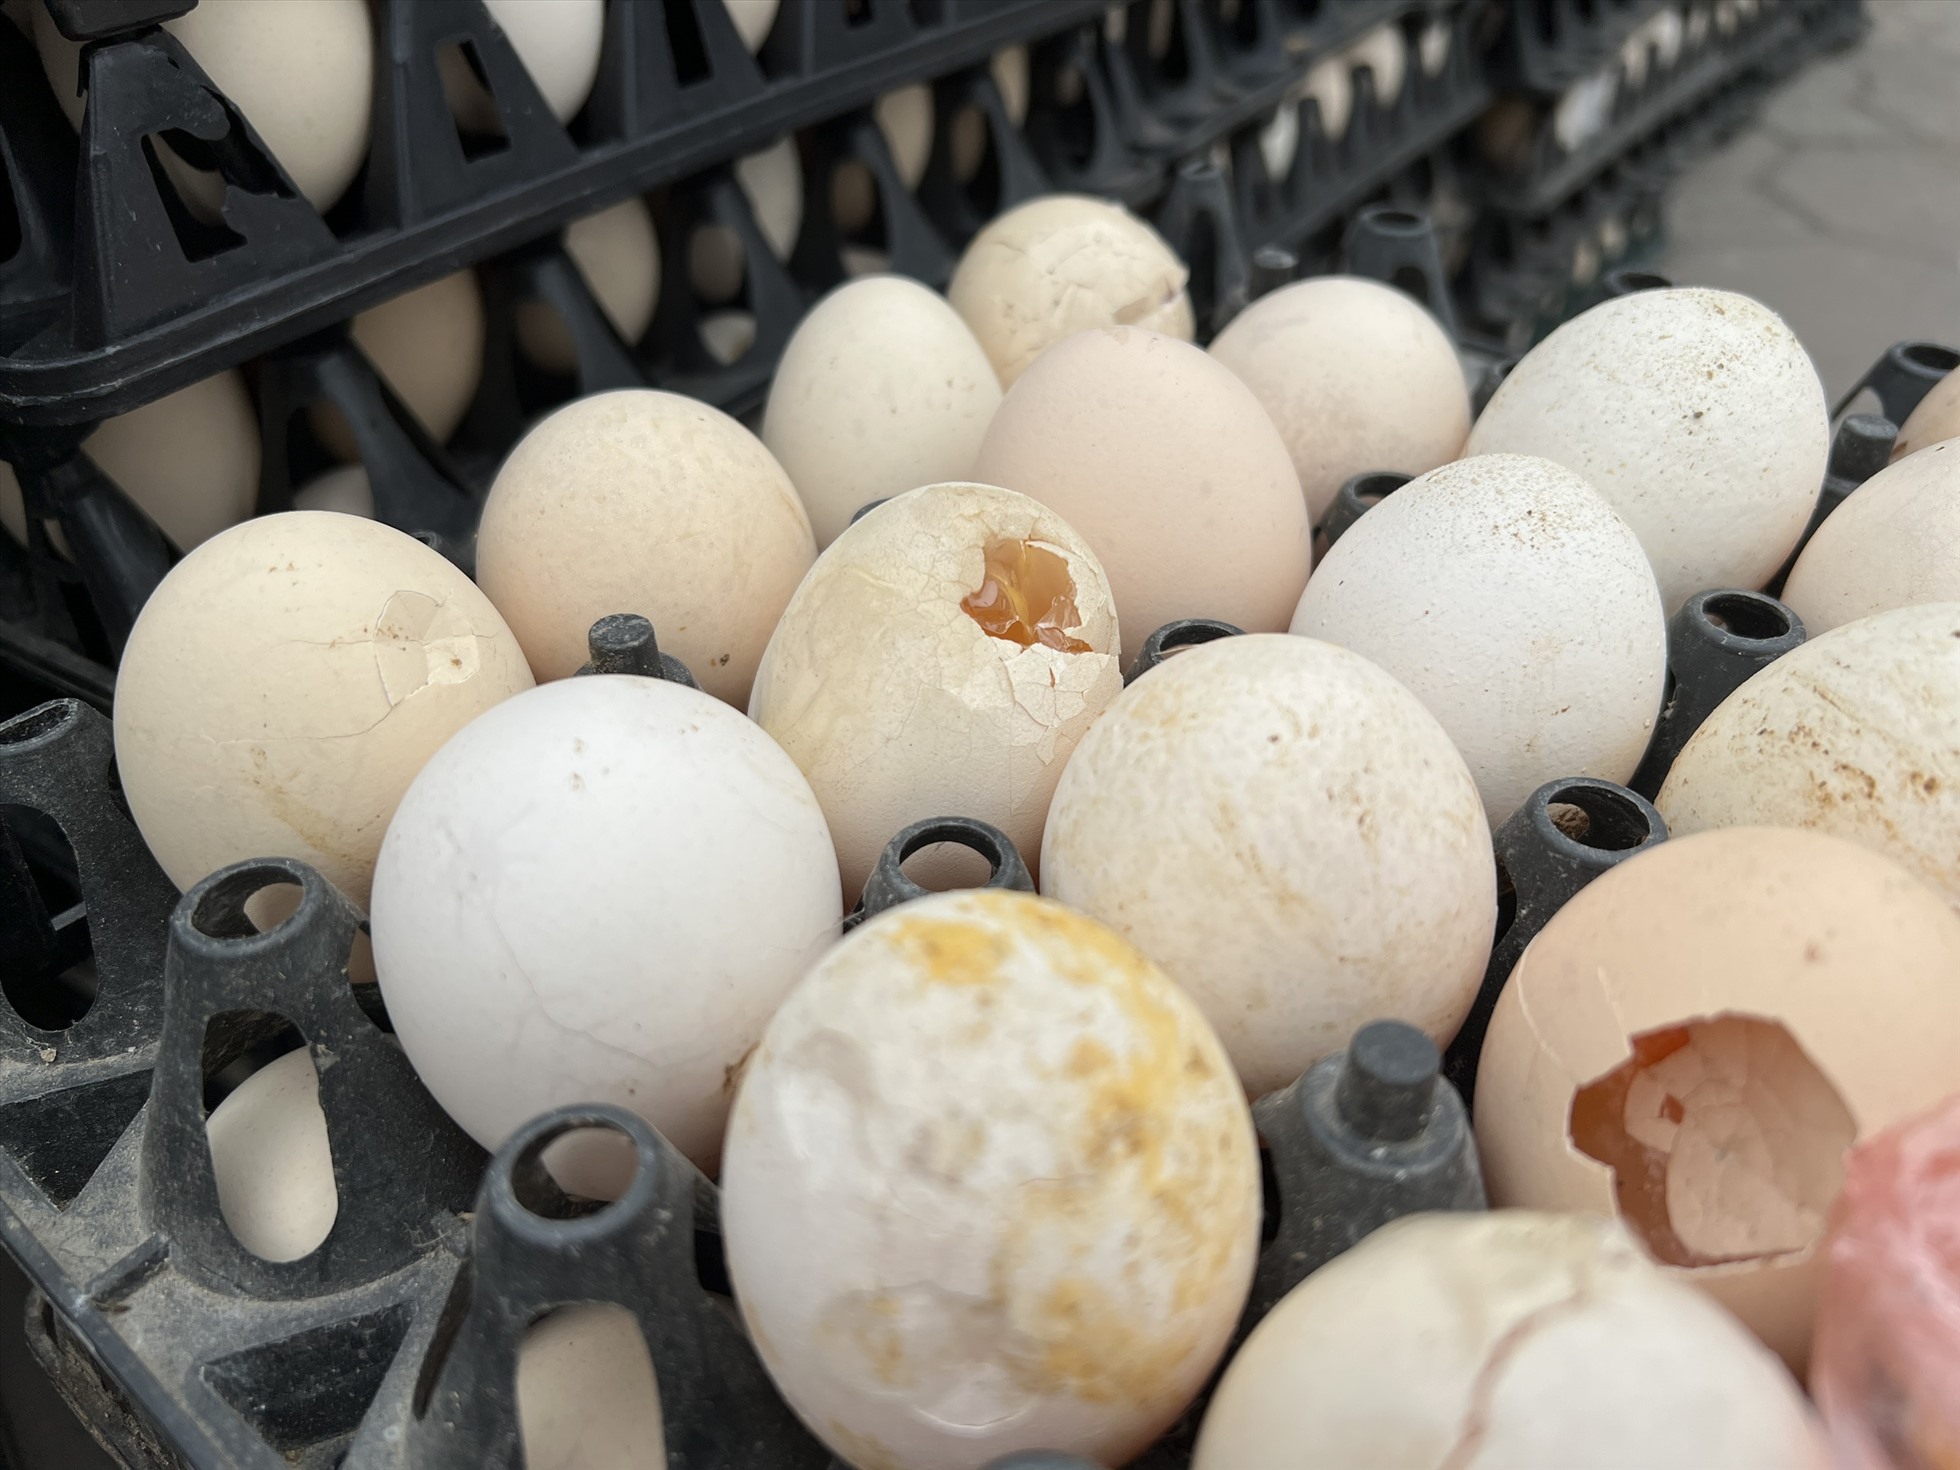 Những quả trứng bị dập được để vào khay riêng, giá từ 1.000-1.200 đồng/quả. Ảnh: Nguyễn Thúy